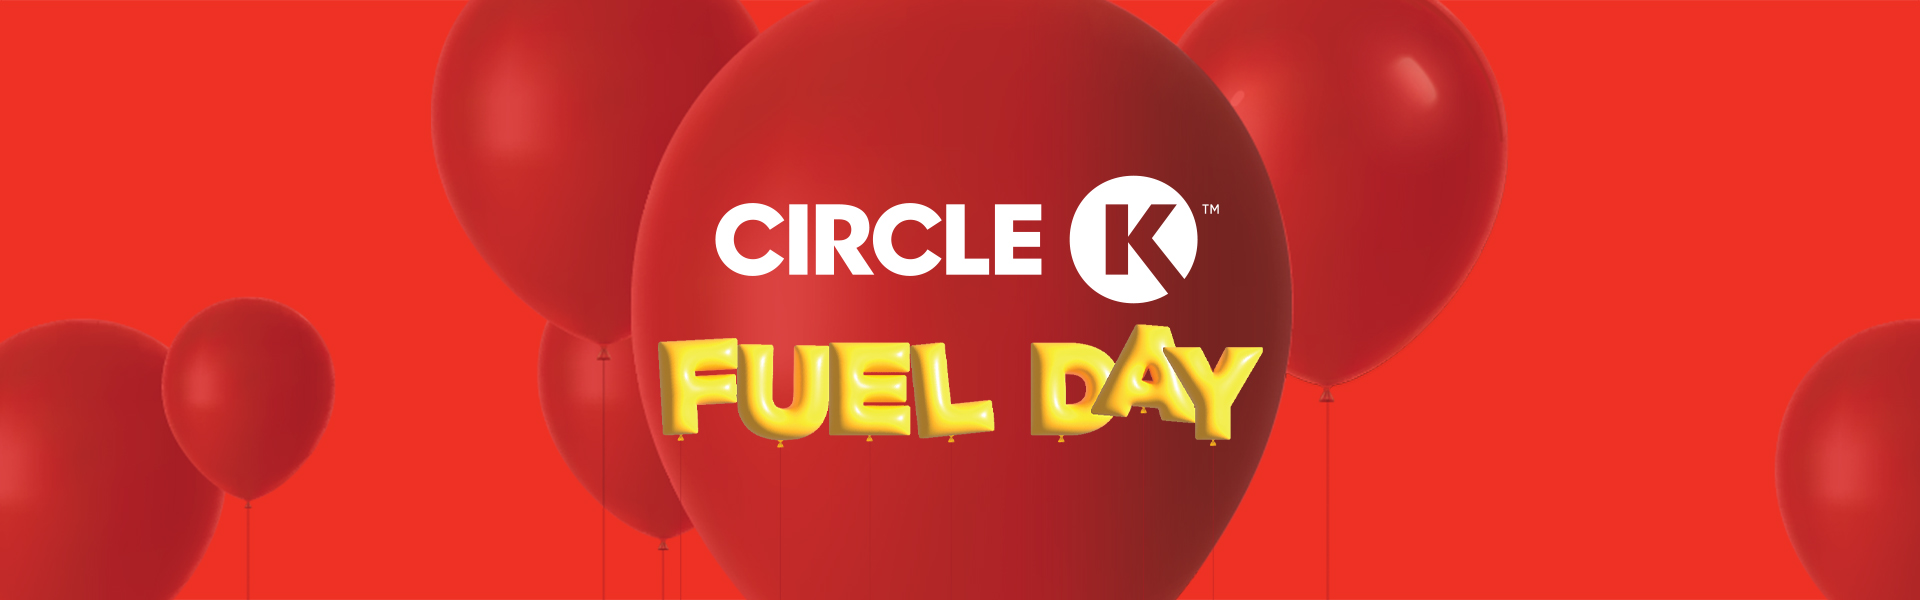 Circle K Fuel Day Ontario Circle K